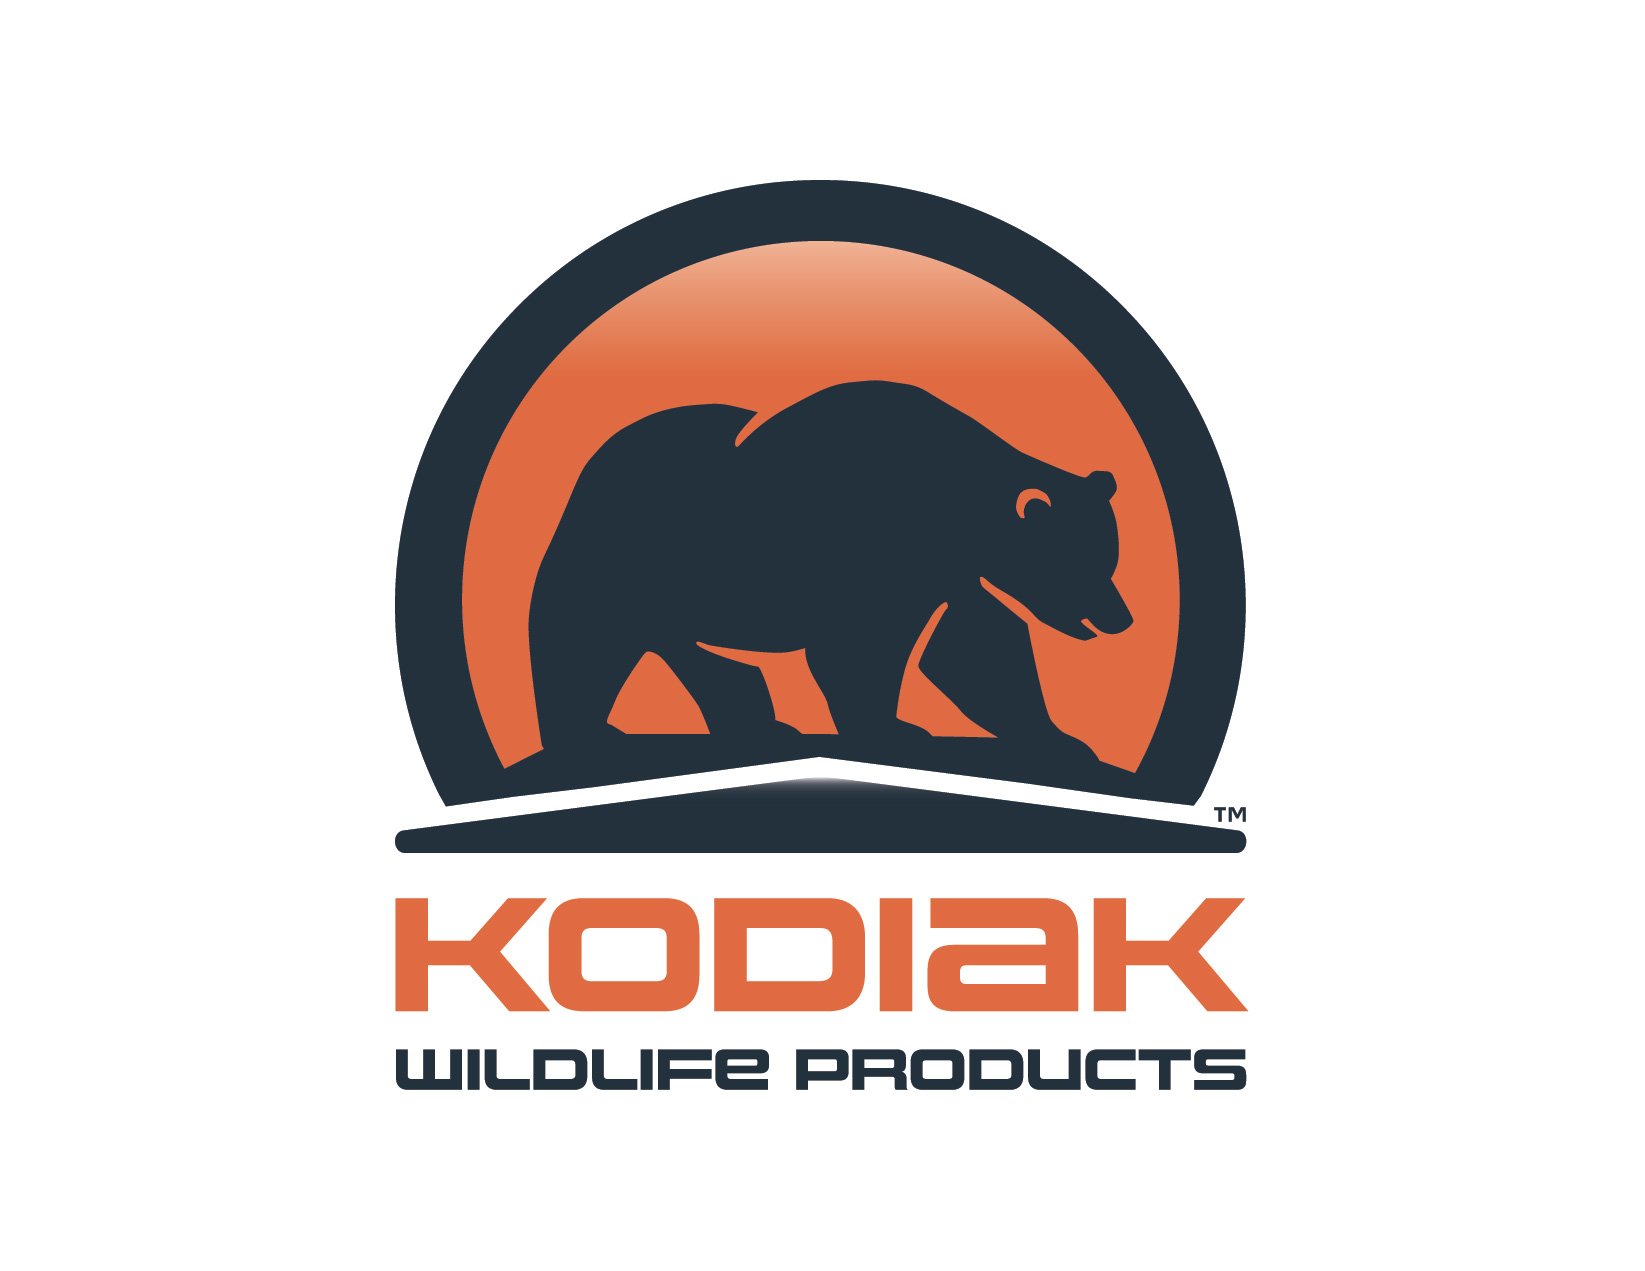 Kodiak_TM_Logo.jpg